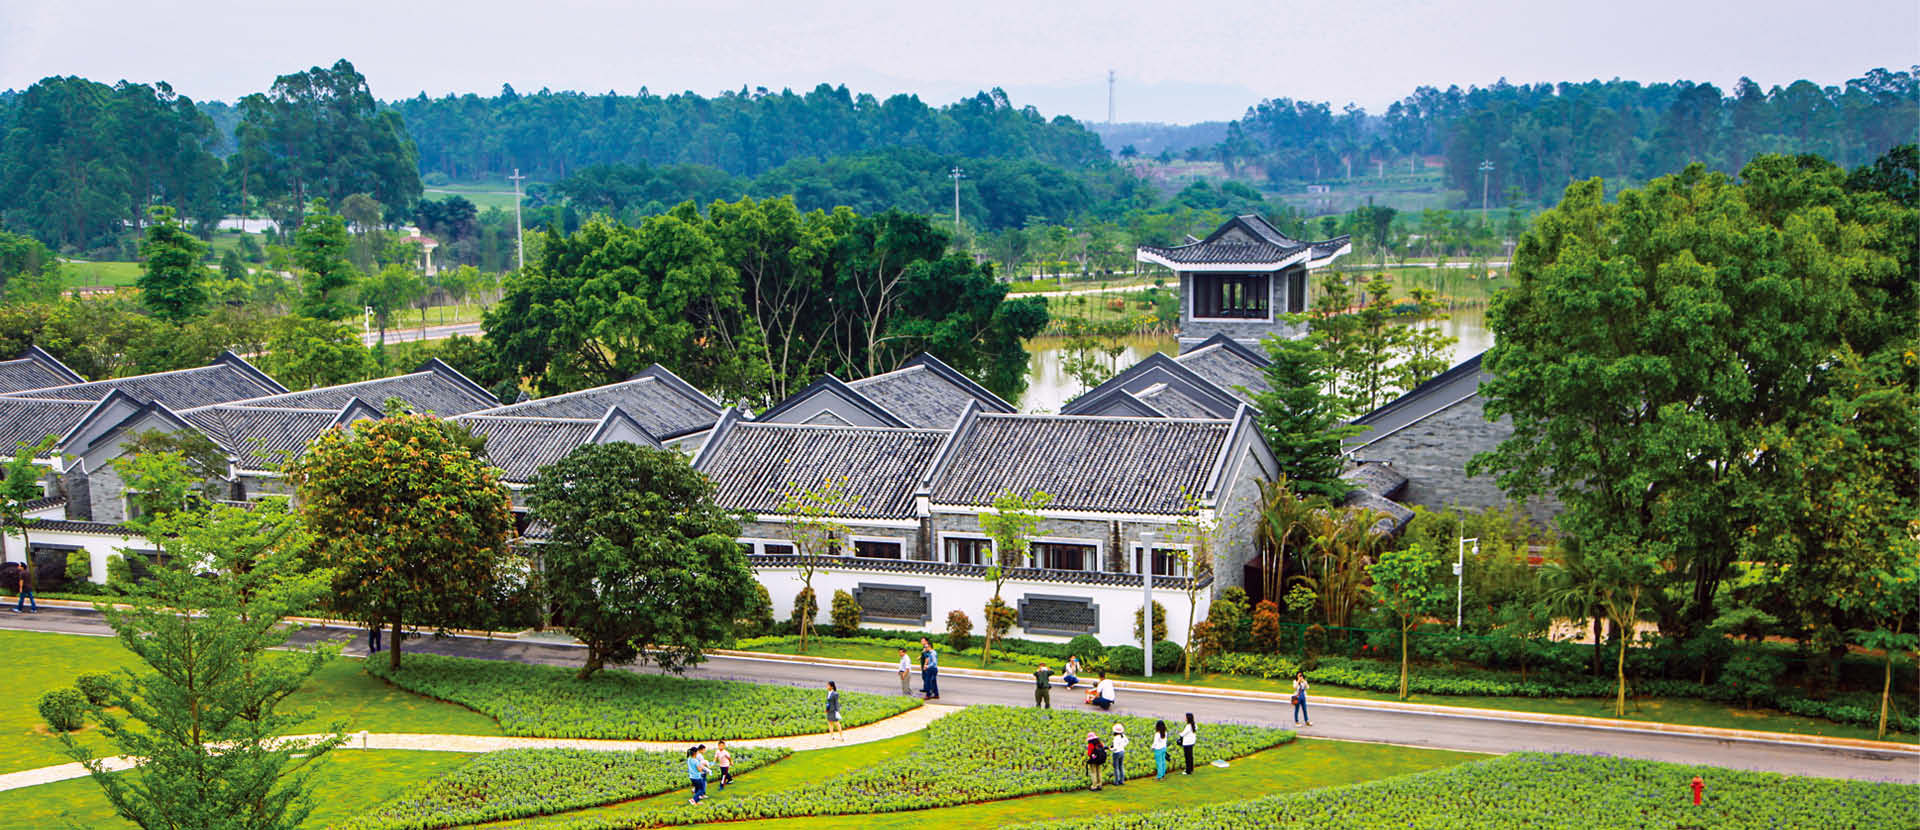 广新农业生态园文化酒店